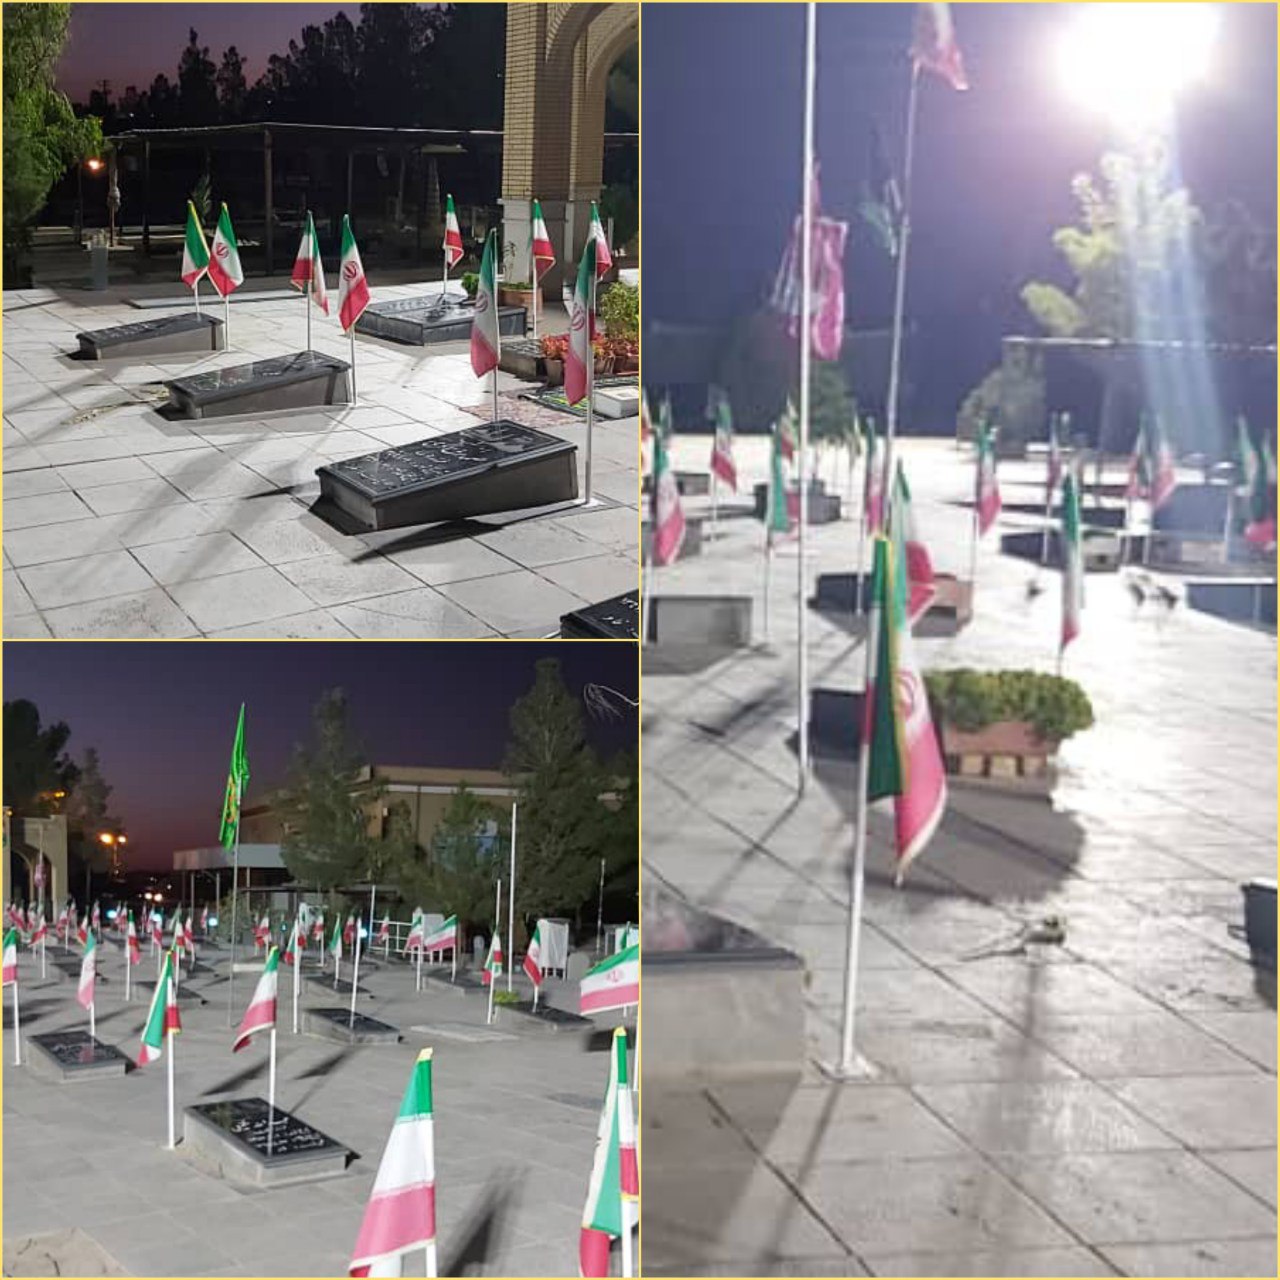 🔰 عملیات اجرای روشنایی گلزار شهدای شهر ورزنه توسط شهرداری ورزنه انجام گرفت.